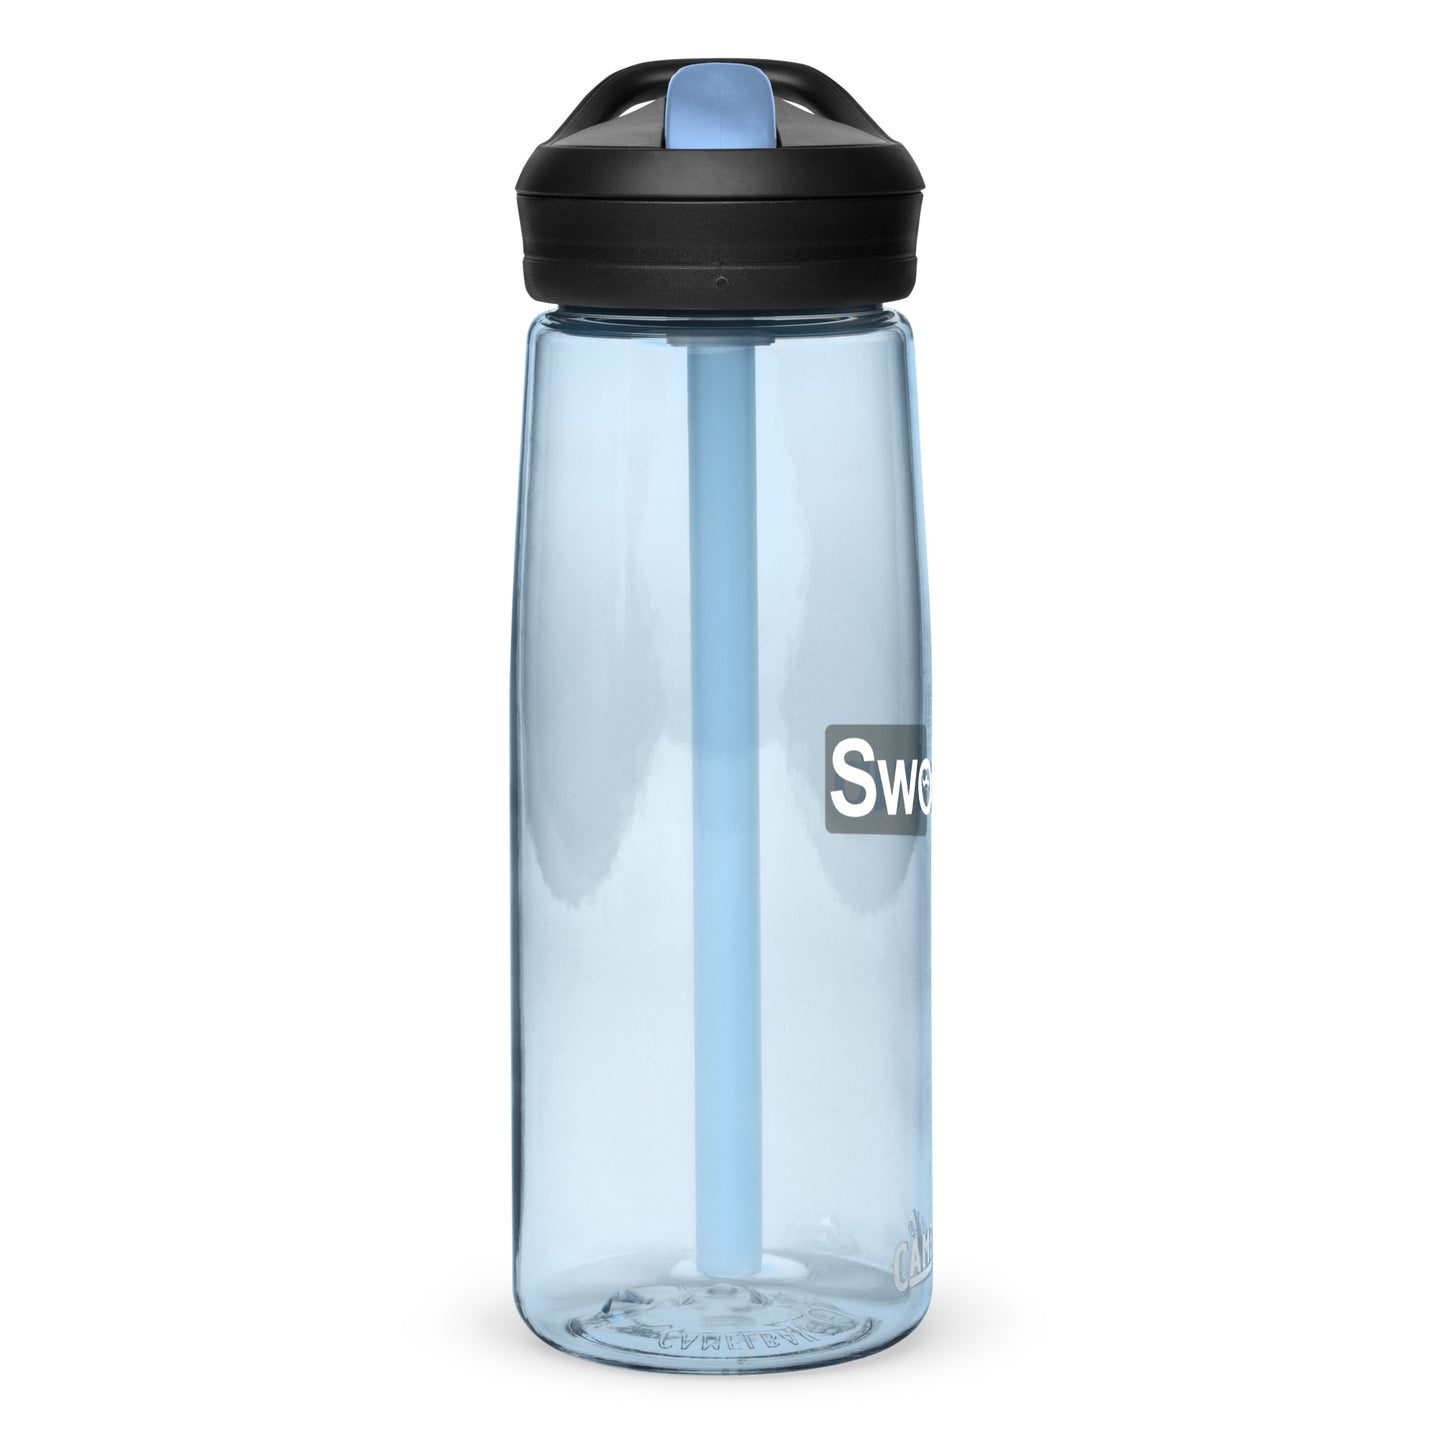 Swole Hub Water Bottle